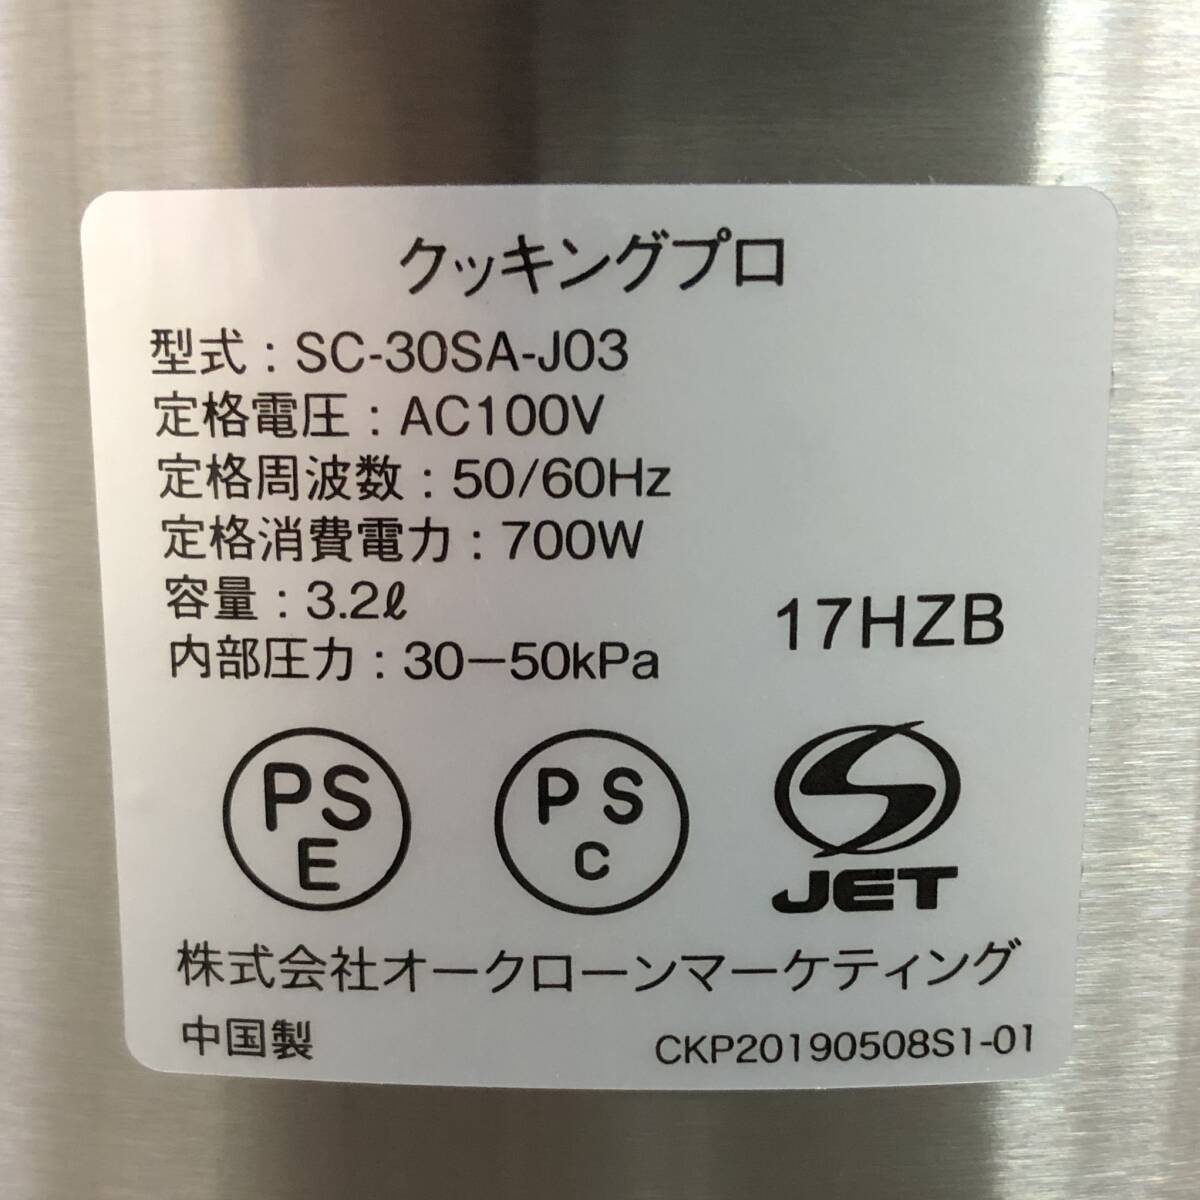  не использовался / Cooking Pro / SC-30SA-J03 / кулинария Pro / электрический скороварка / магазин Japan / коробка * принадлежности имеется / текущее состояние товар 